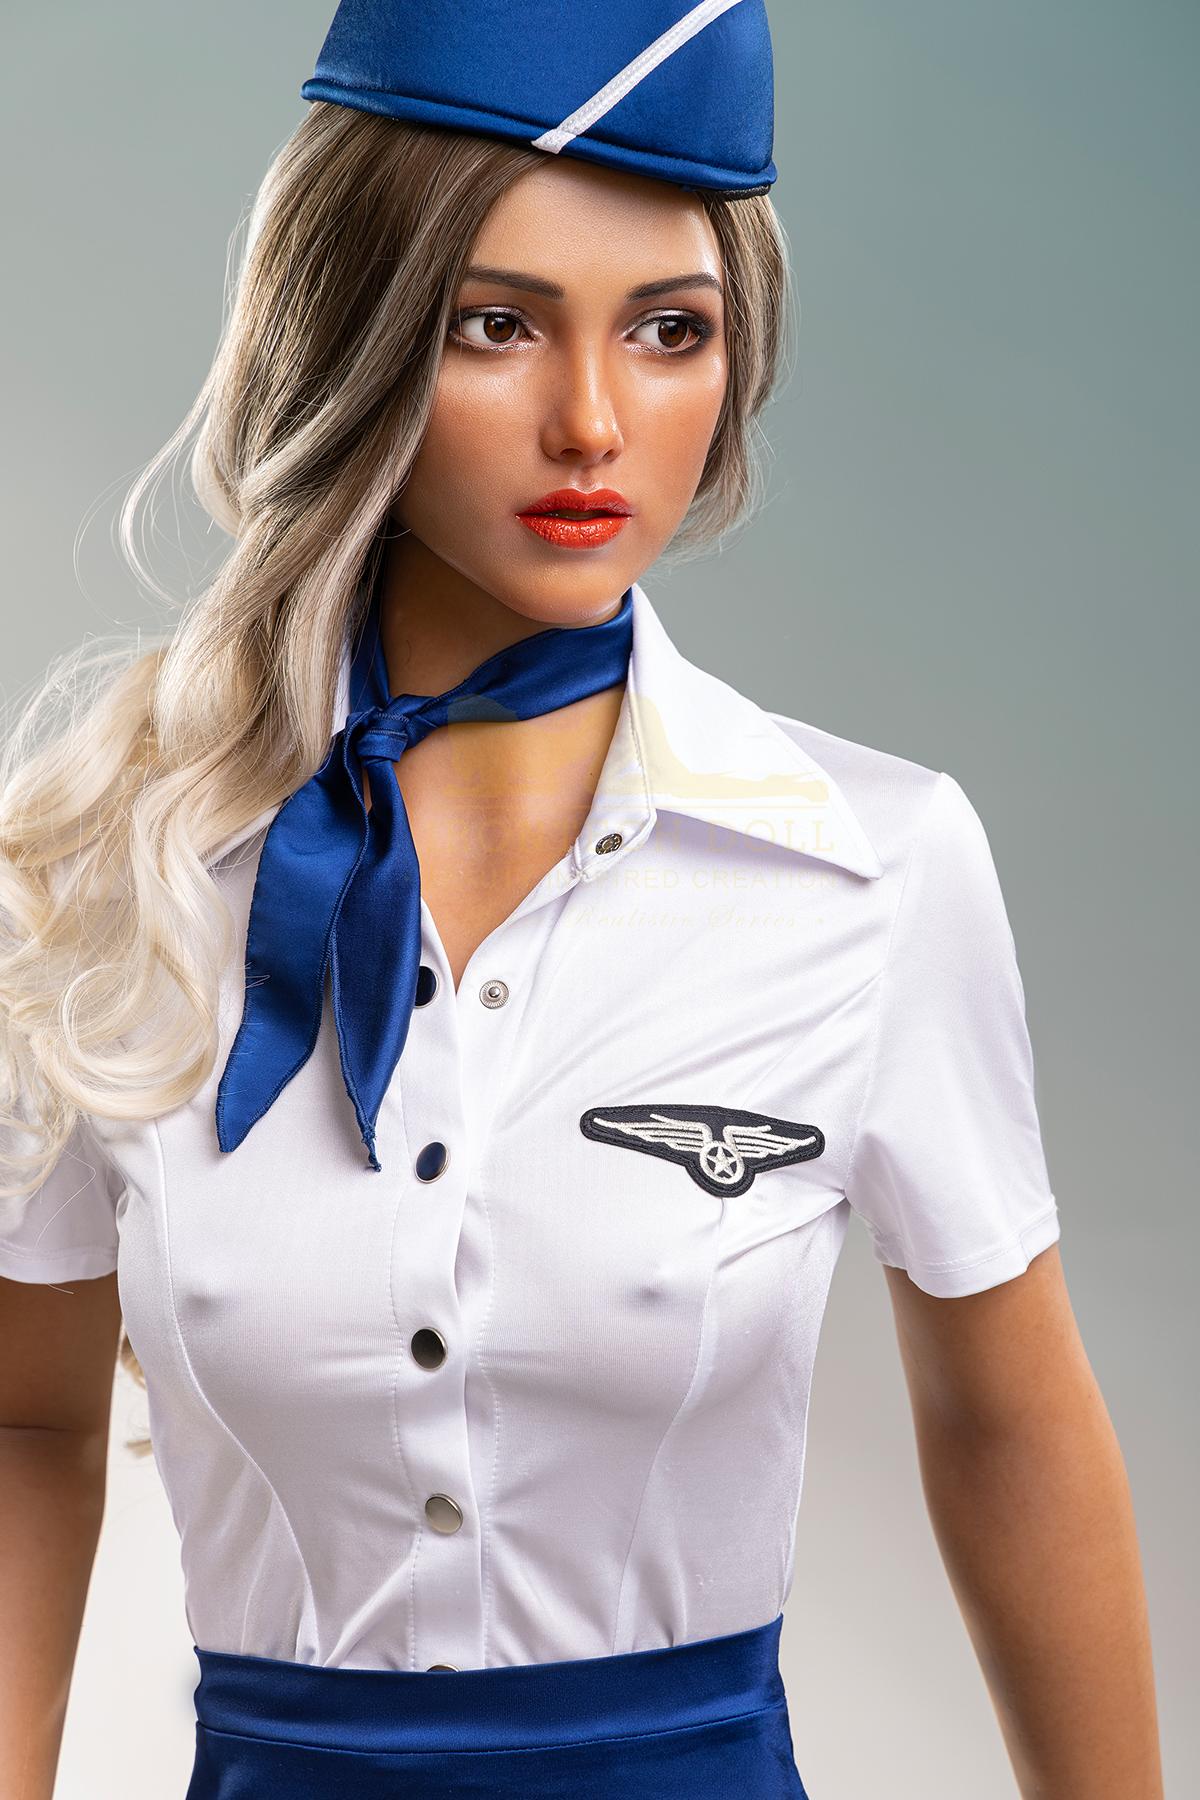 Silicone sex doll Chloé | Sexy blonde stewardess sex doll